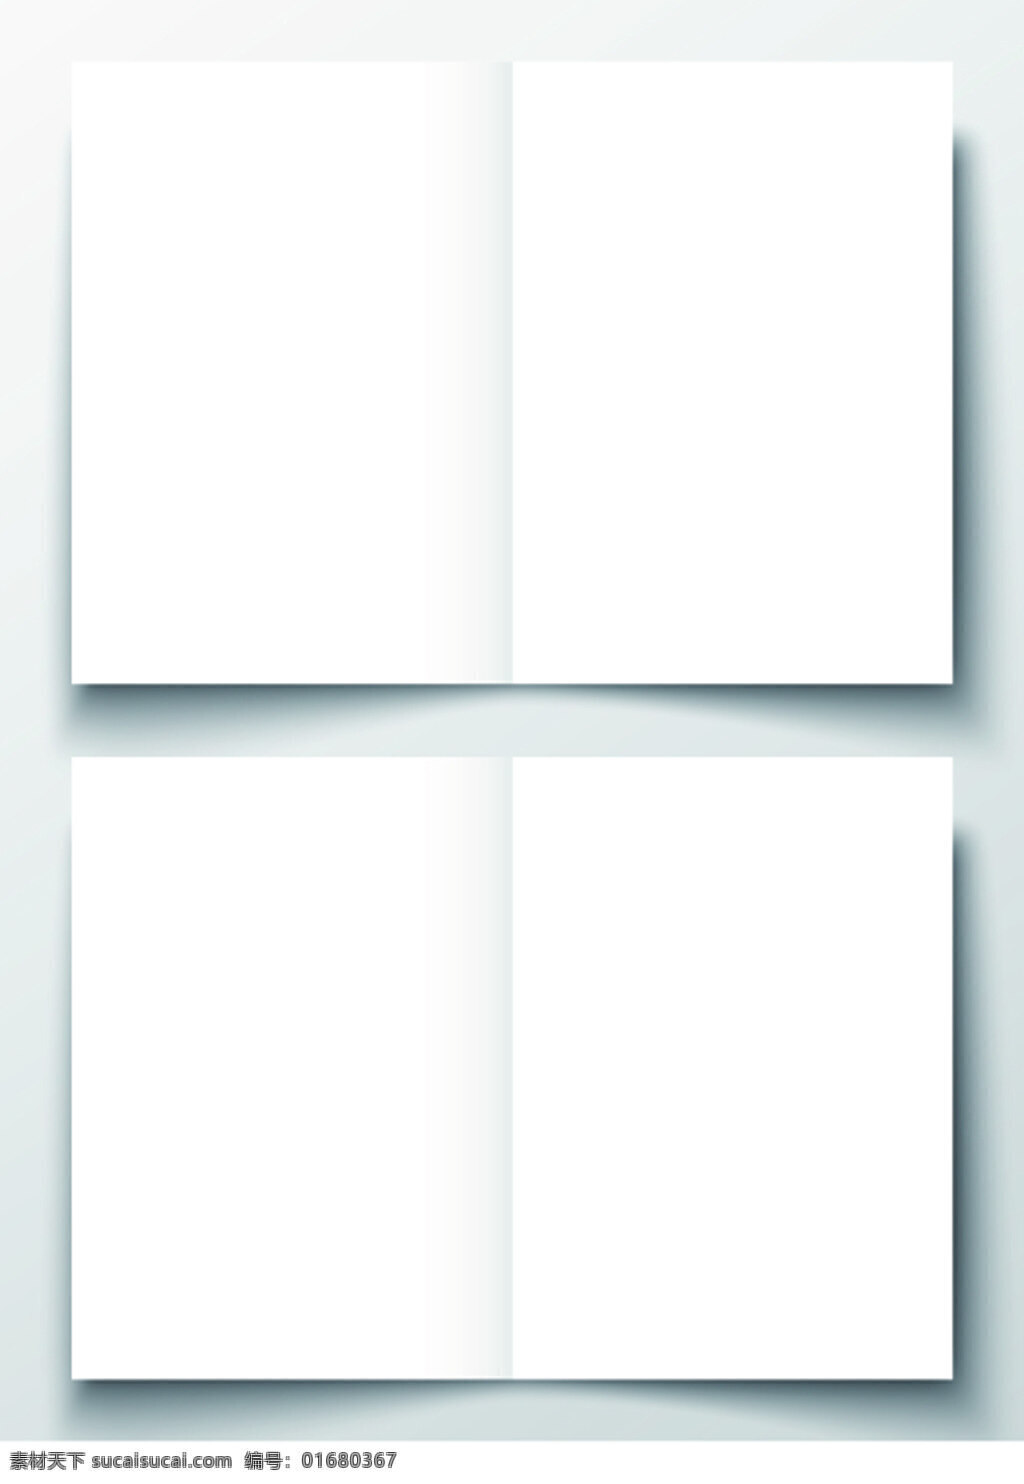 空白折页模板 模板 折页 空白